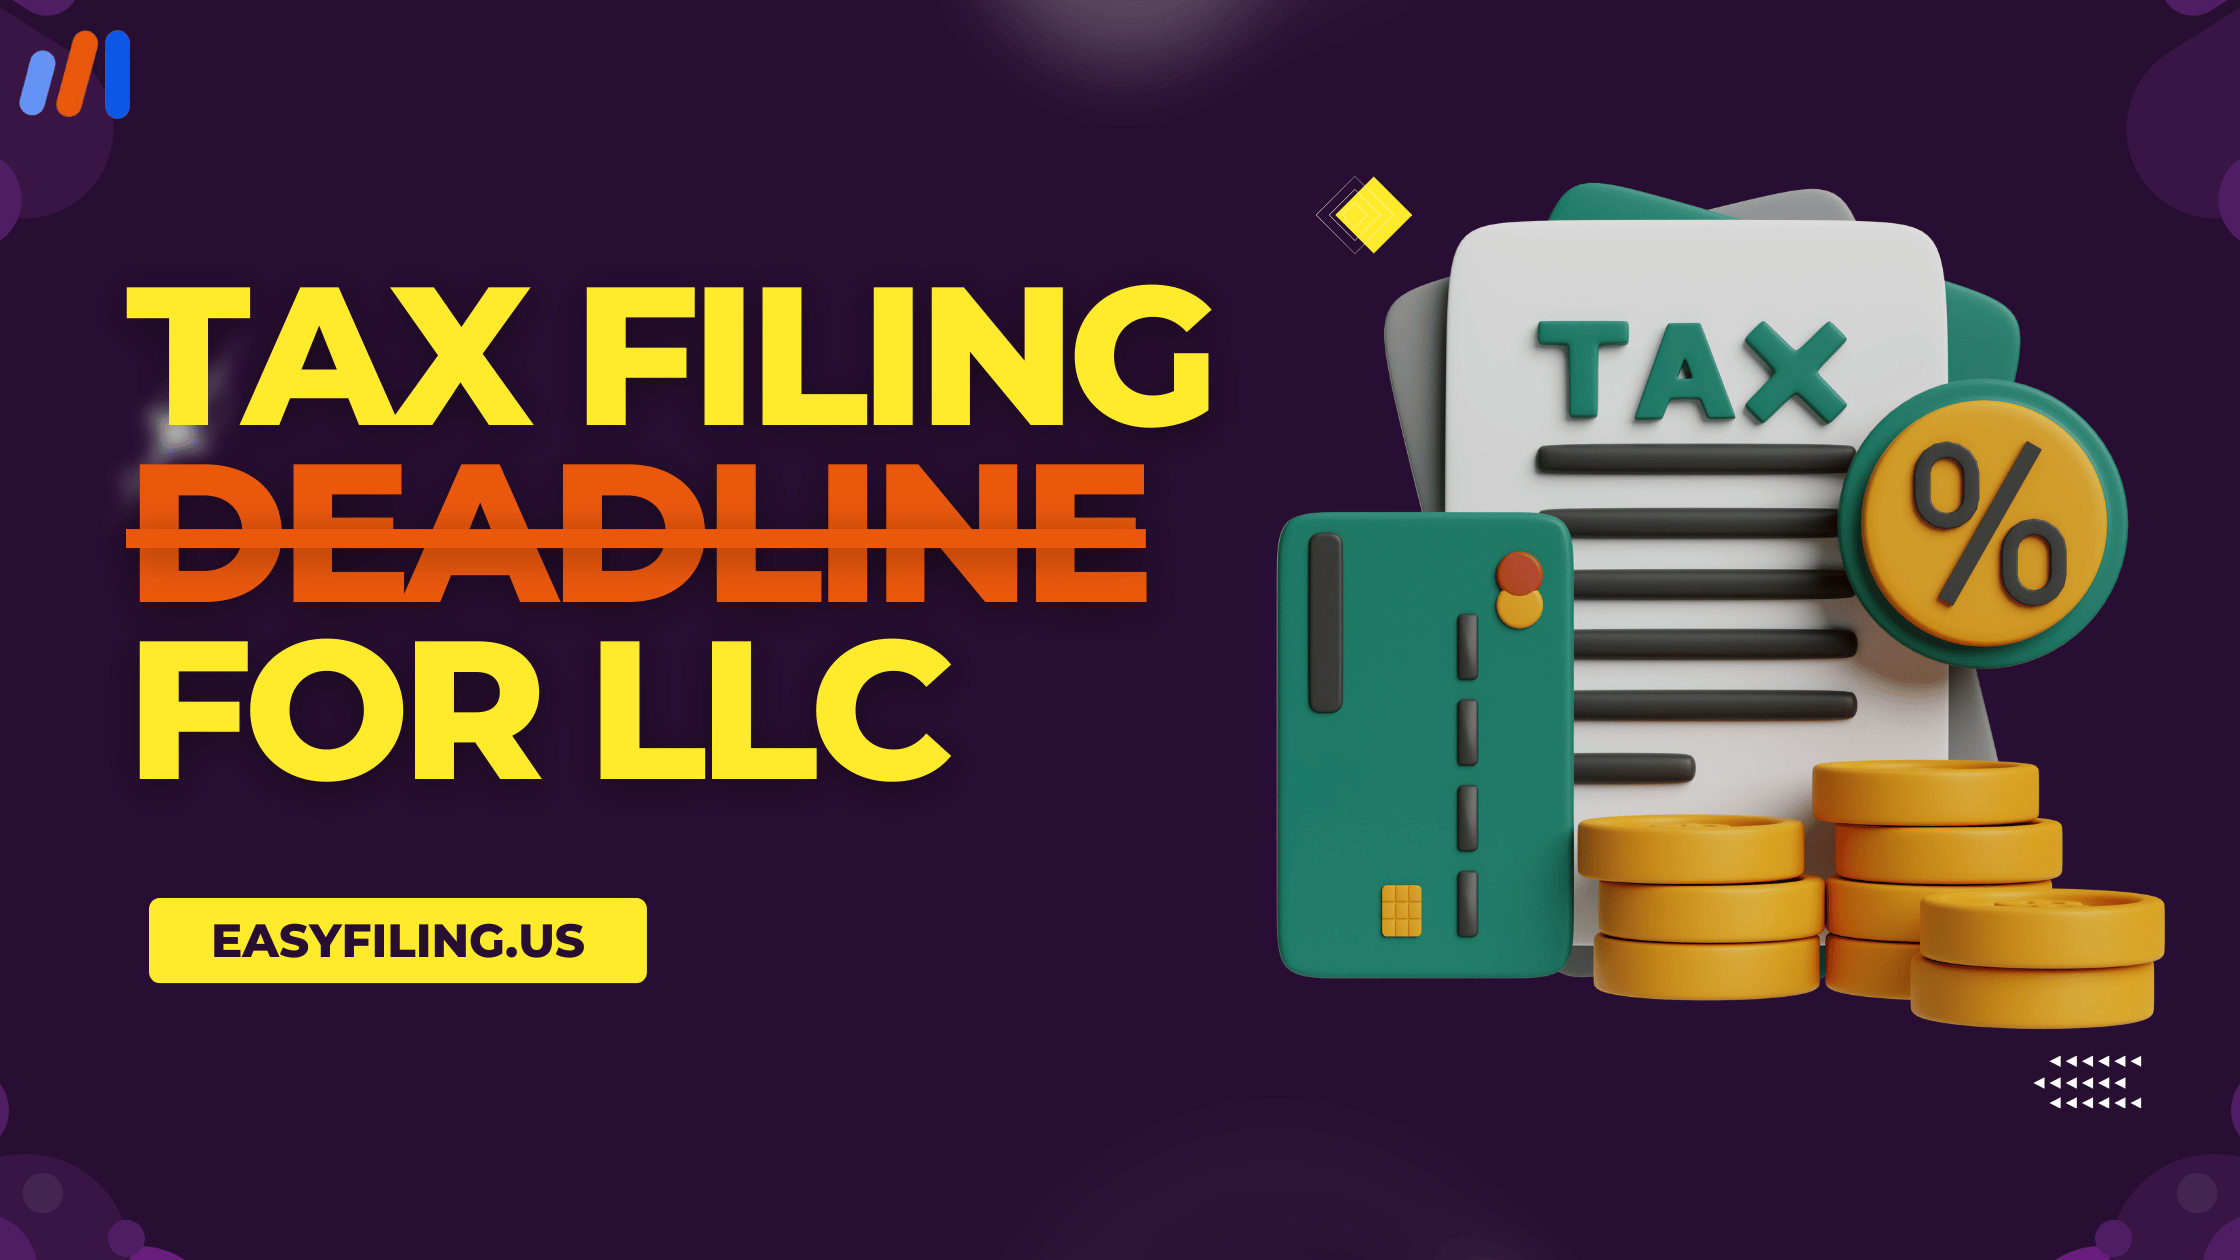 Tax Filing Deadline for LLC